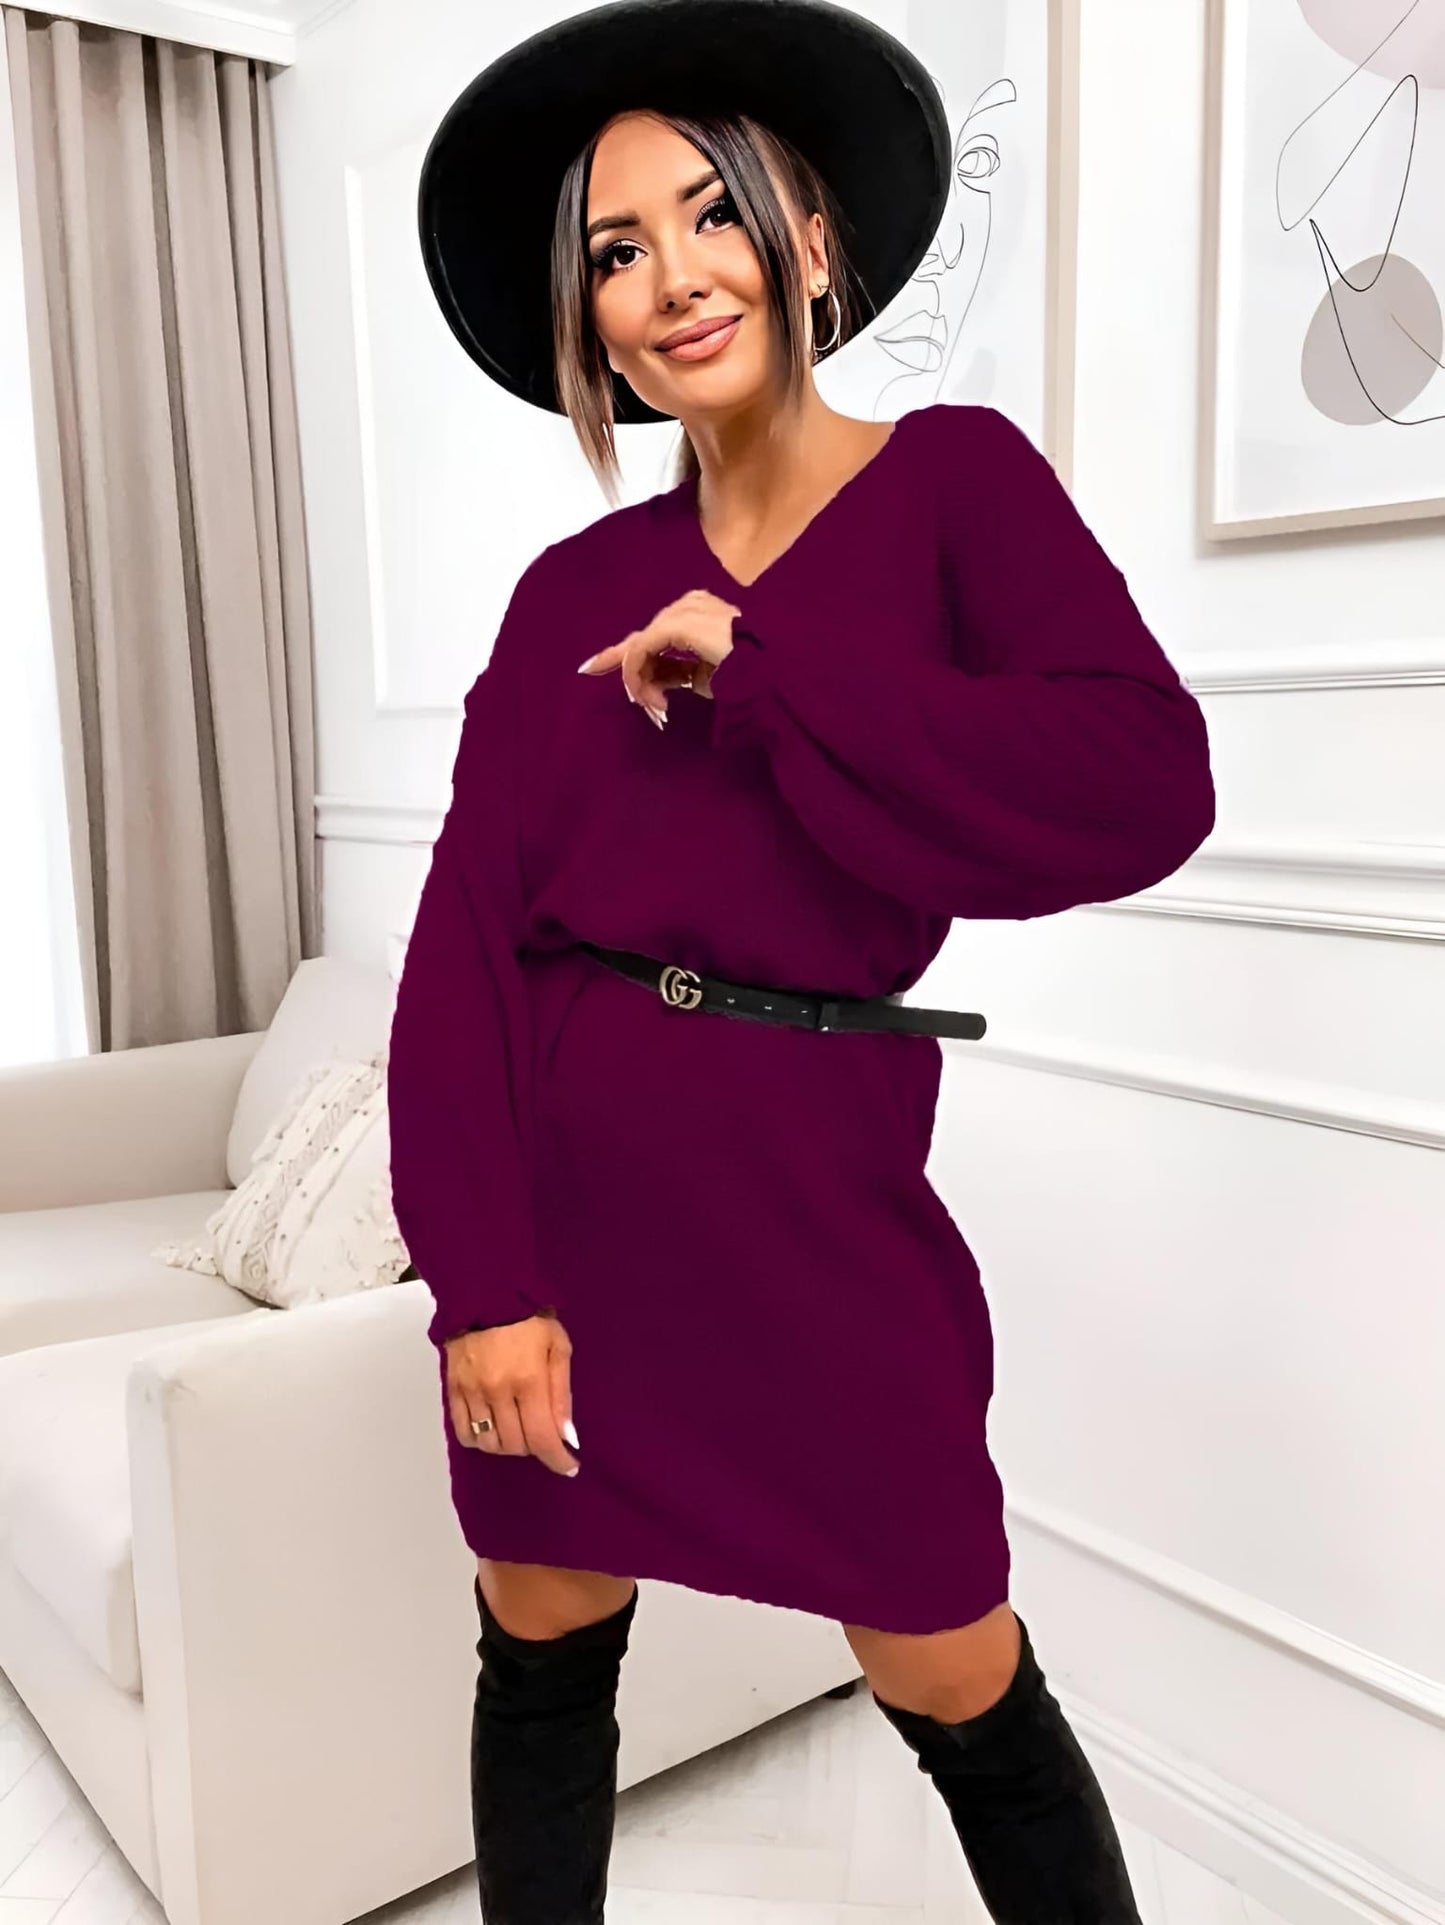 
                  
                    Vestito Donna Maxi Pull Scollo V Morbido Caldo Morbido Casual Elegante - LE STYLE DE PARIS
                  
                